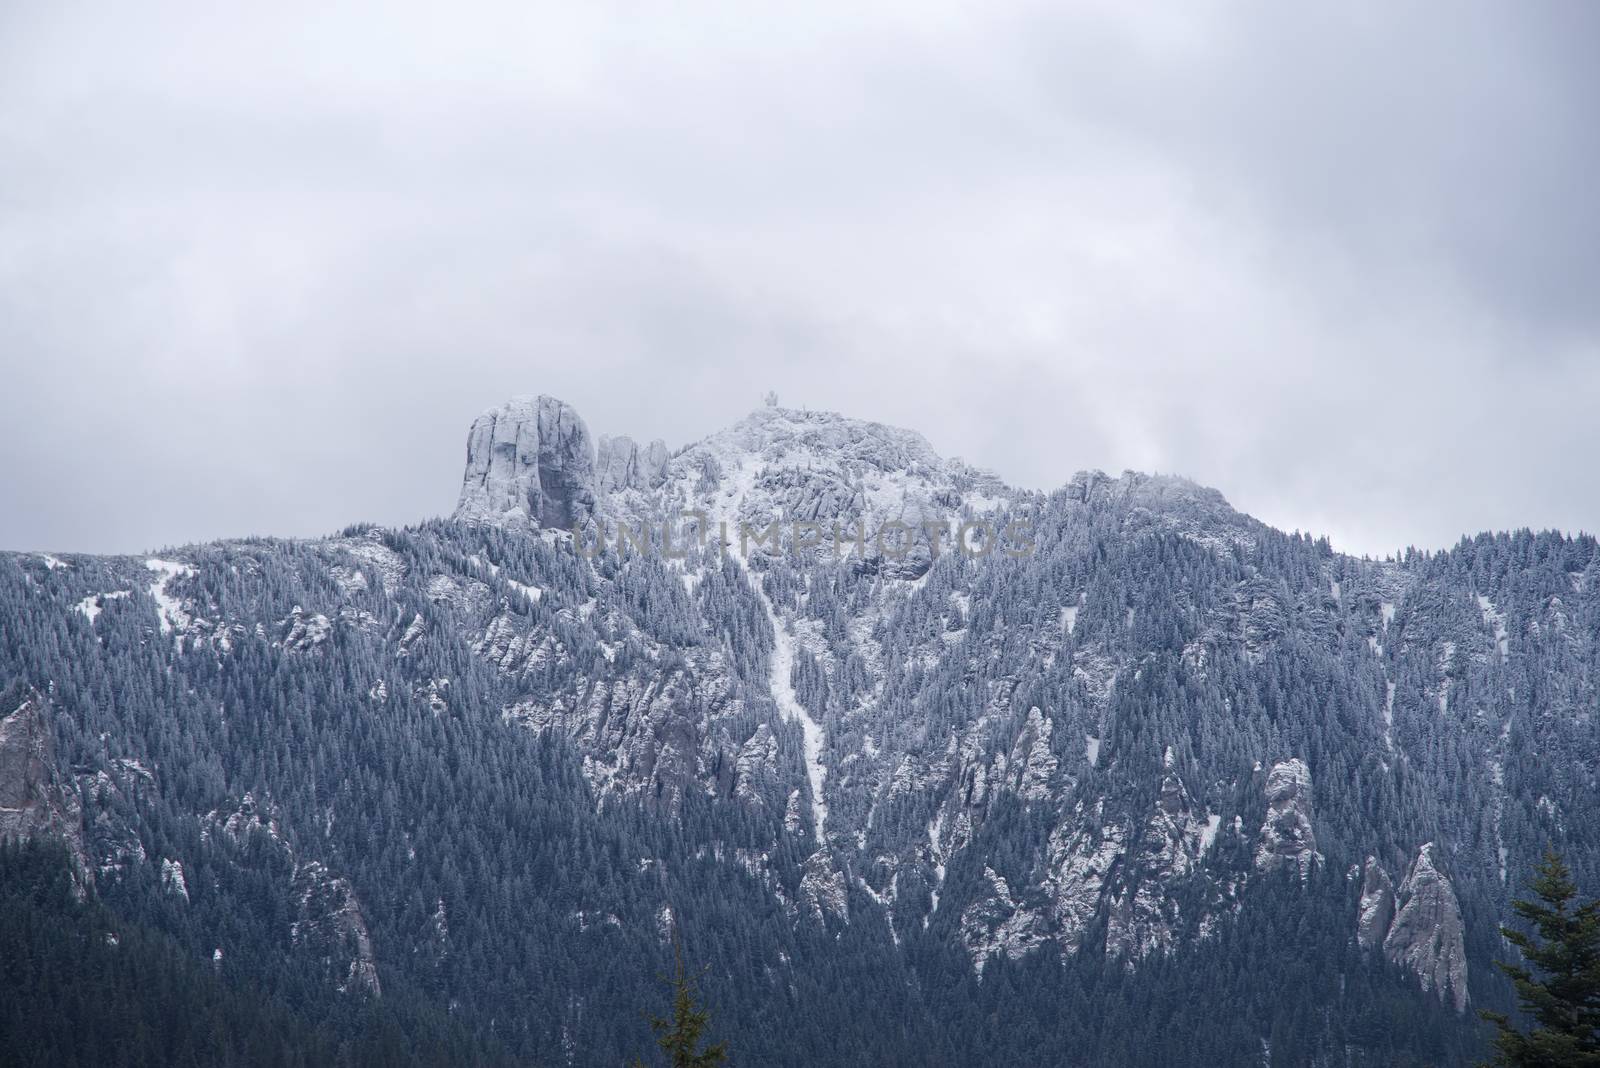 Fresh snow on mountain peak by savcoco